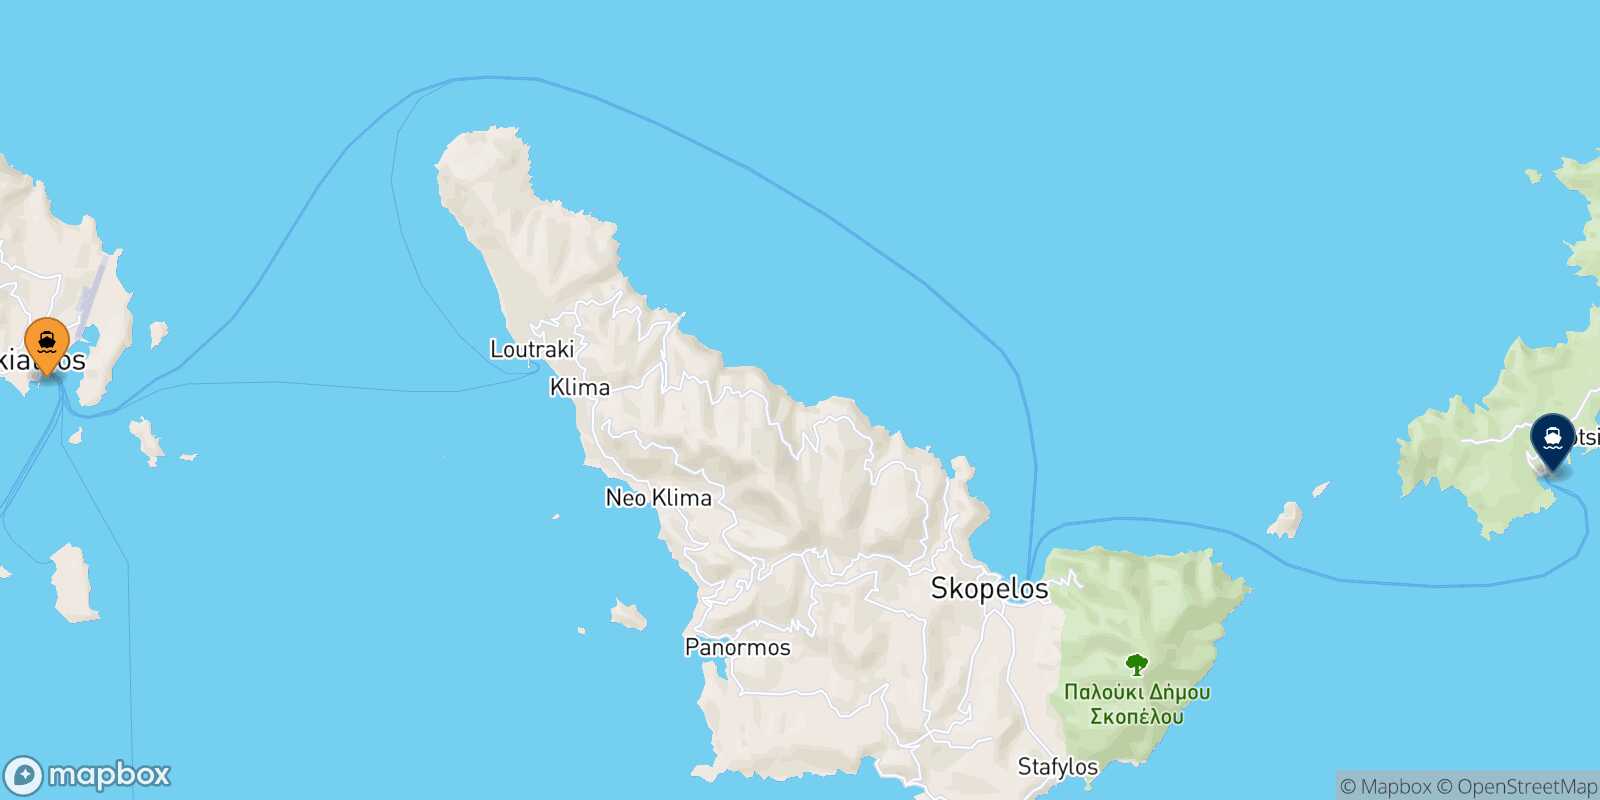 Skiathos Alonissos route map